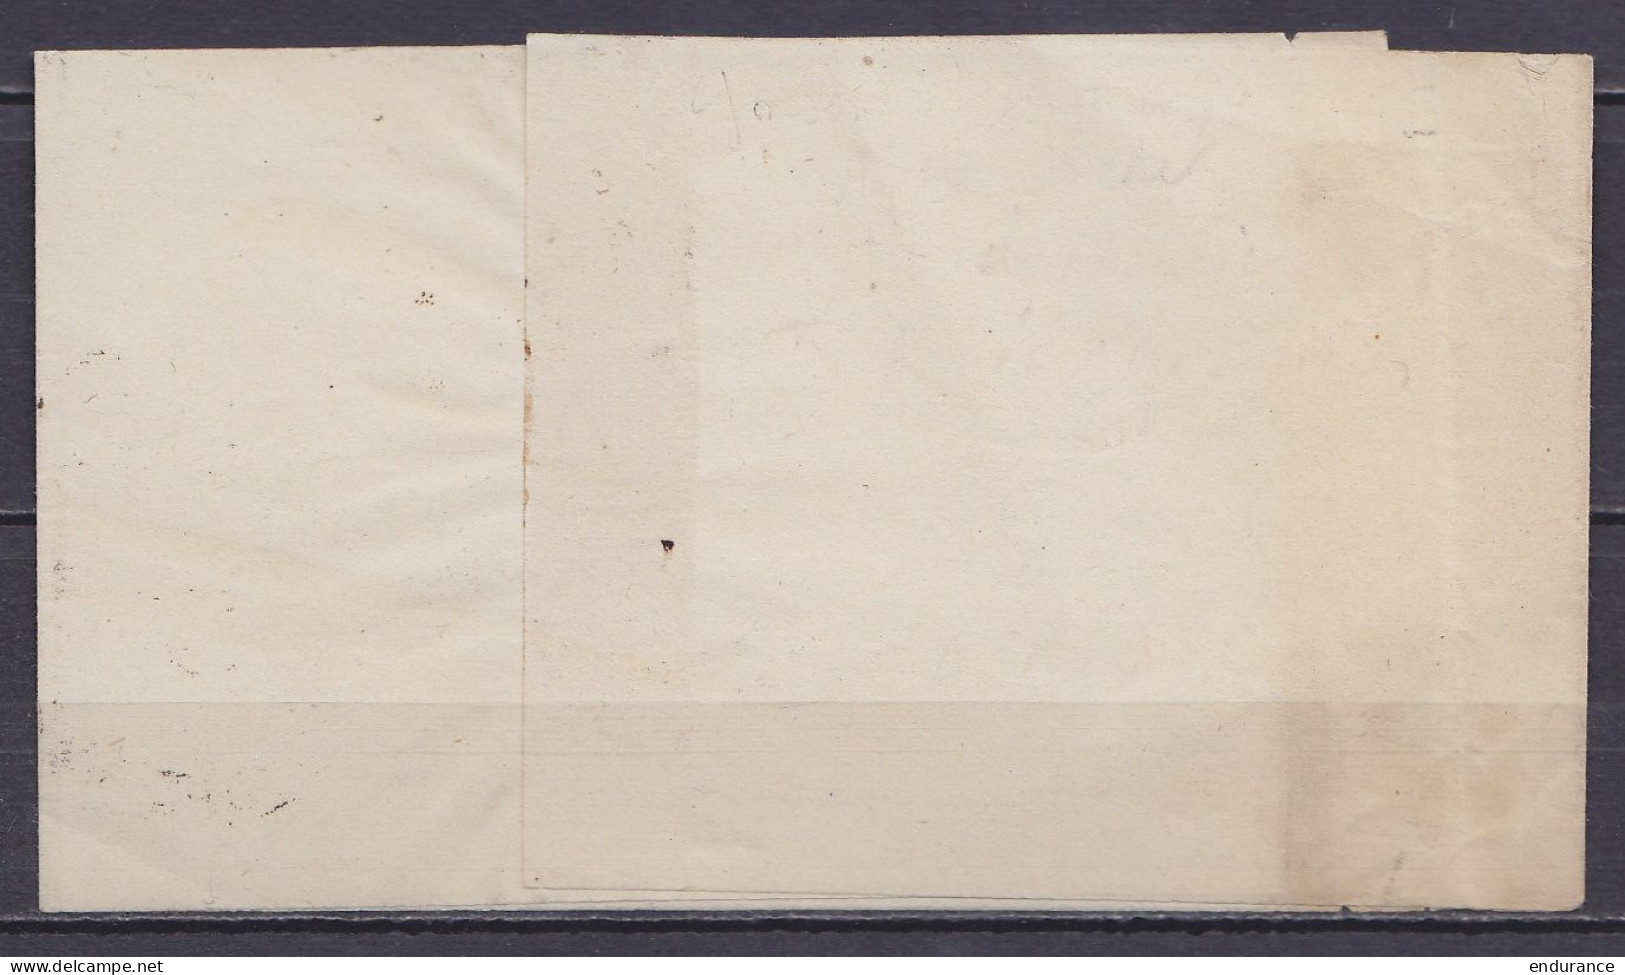 Très Rare Cachet à Hernie "PP /17 FEVR. 1869/ ST-JOSSE-TEN-NOODE (BRUXELLES) Sur Bande D'imprimé Pour ANVERS - 1 Ou 2 Pi - 1869-1883 Leopold II